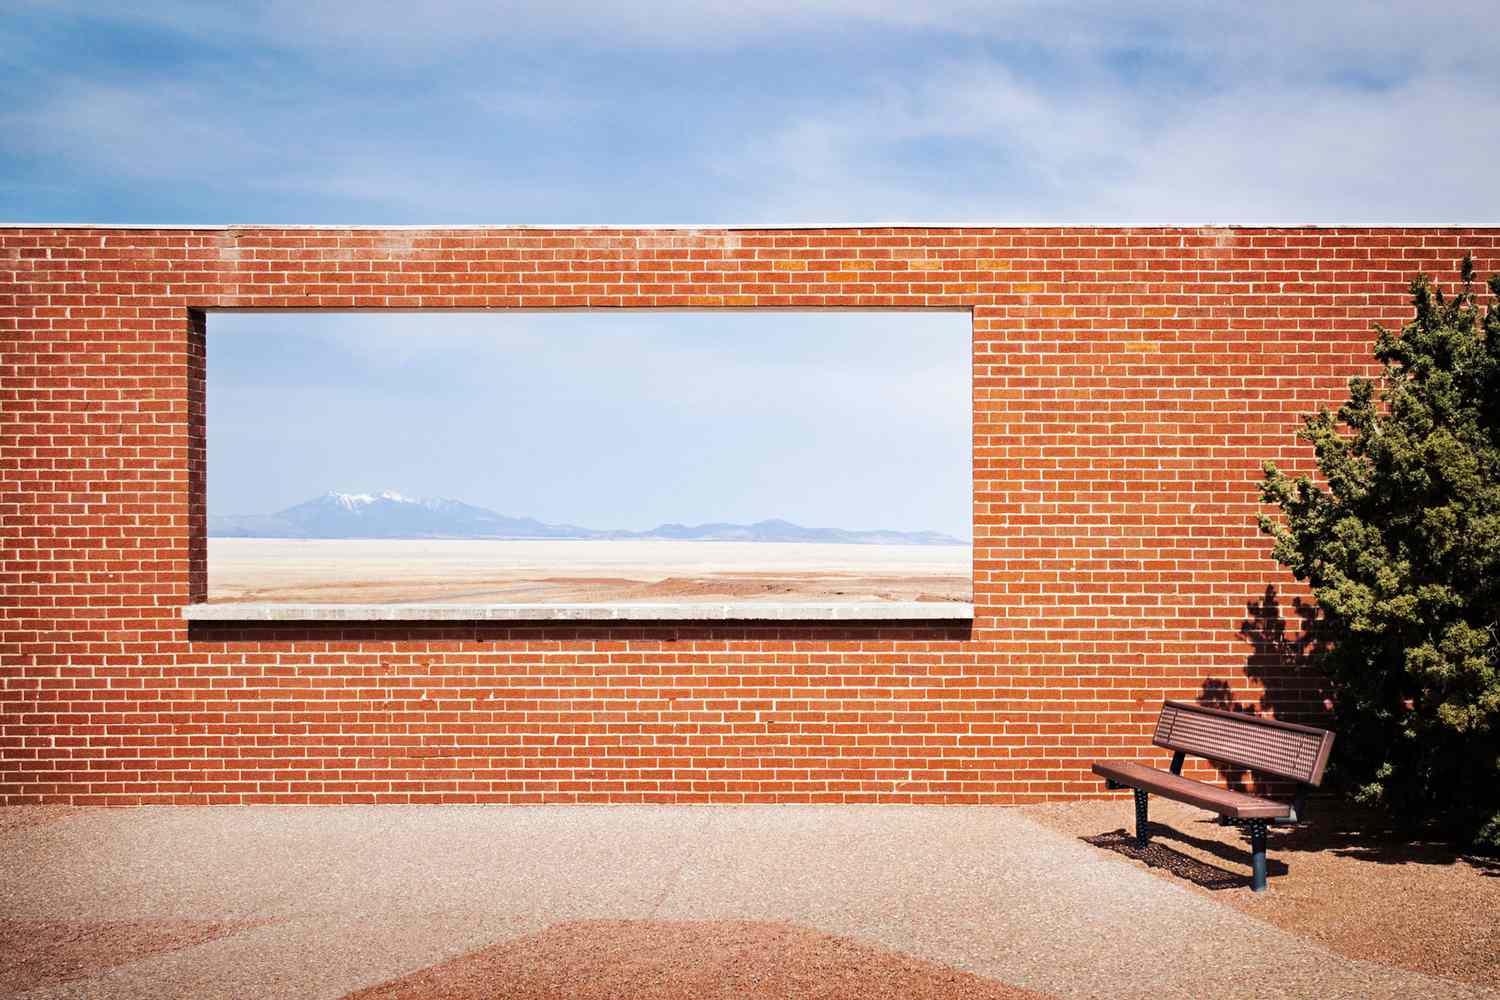 Vue sur le désert à travers une fenêtre d'un mur de briques à Winslow, Arizona